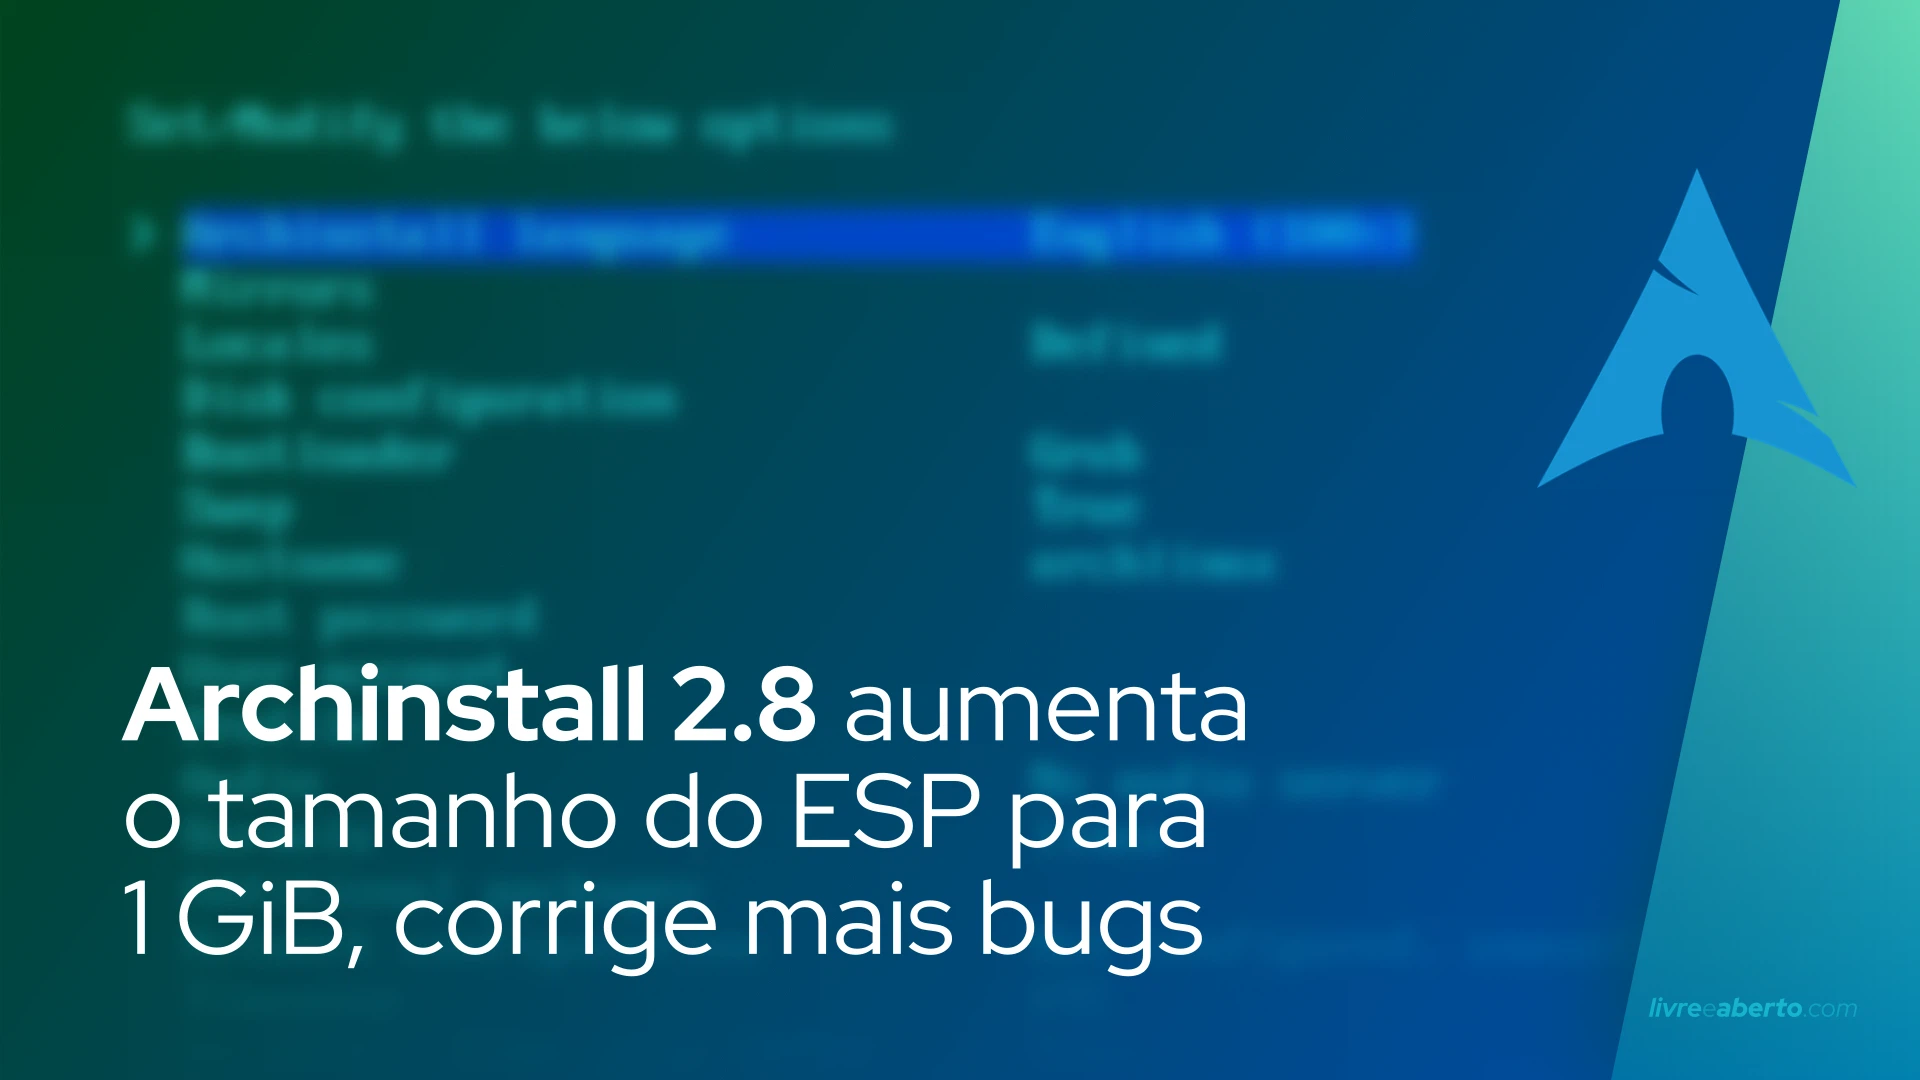 Archinstall 2.8 aumenta o tamanho do ESP para 1 GiB, corrige mais bugs